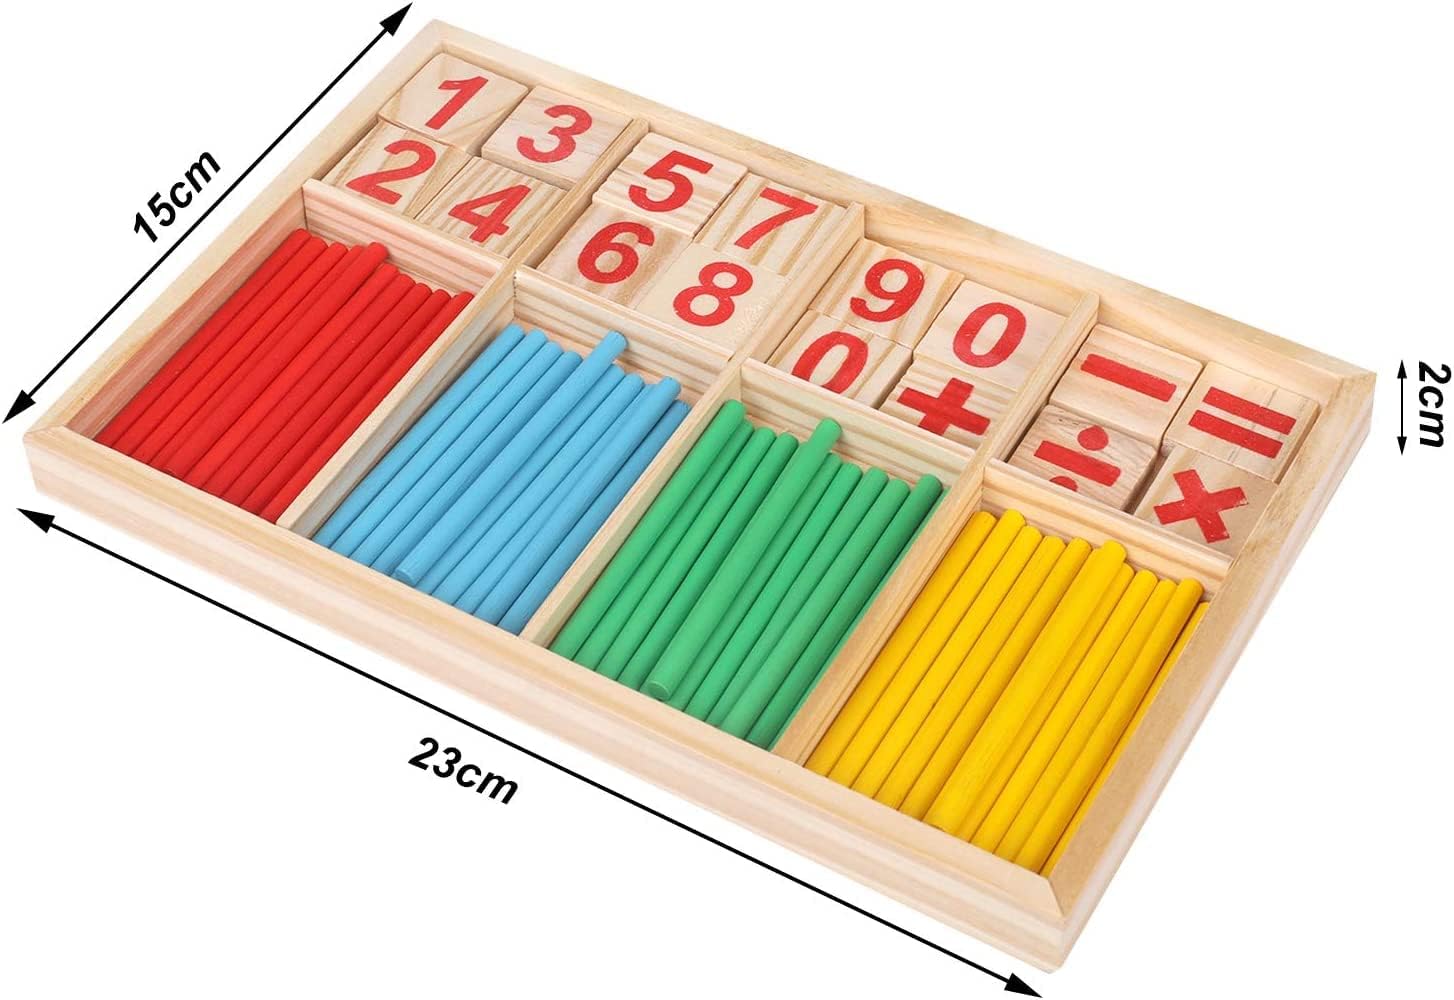 Juguete Educativo Montessori Aprende a Sumar Restar y Multiplicar a Través de Colores y Números